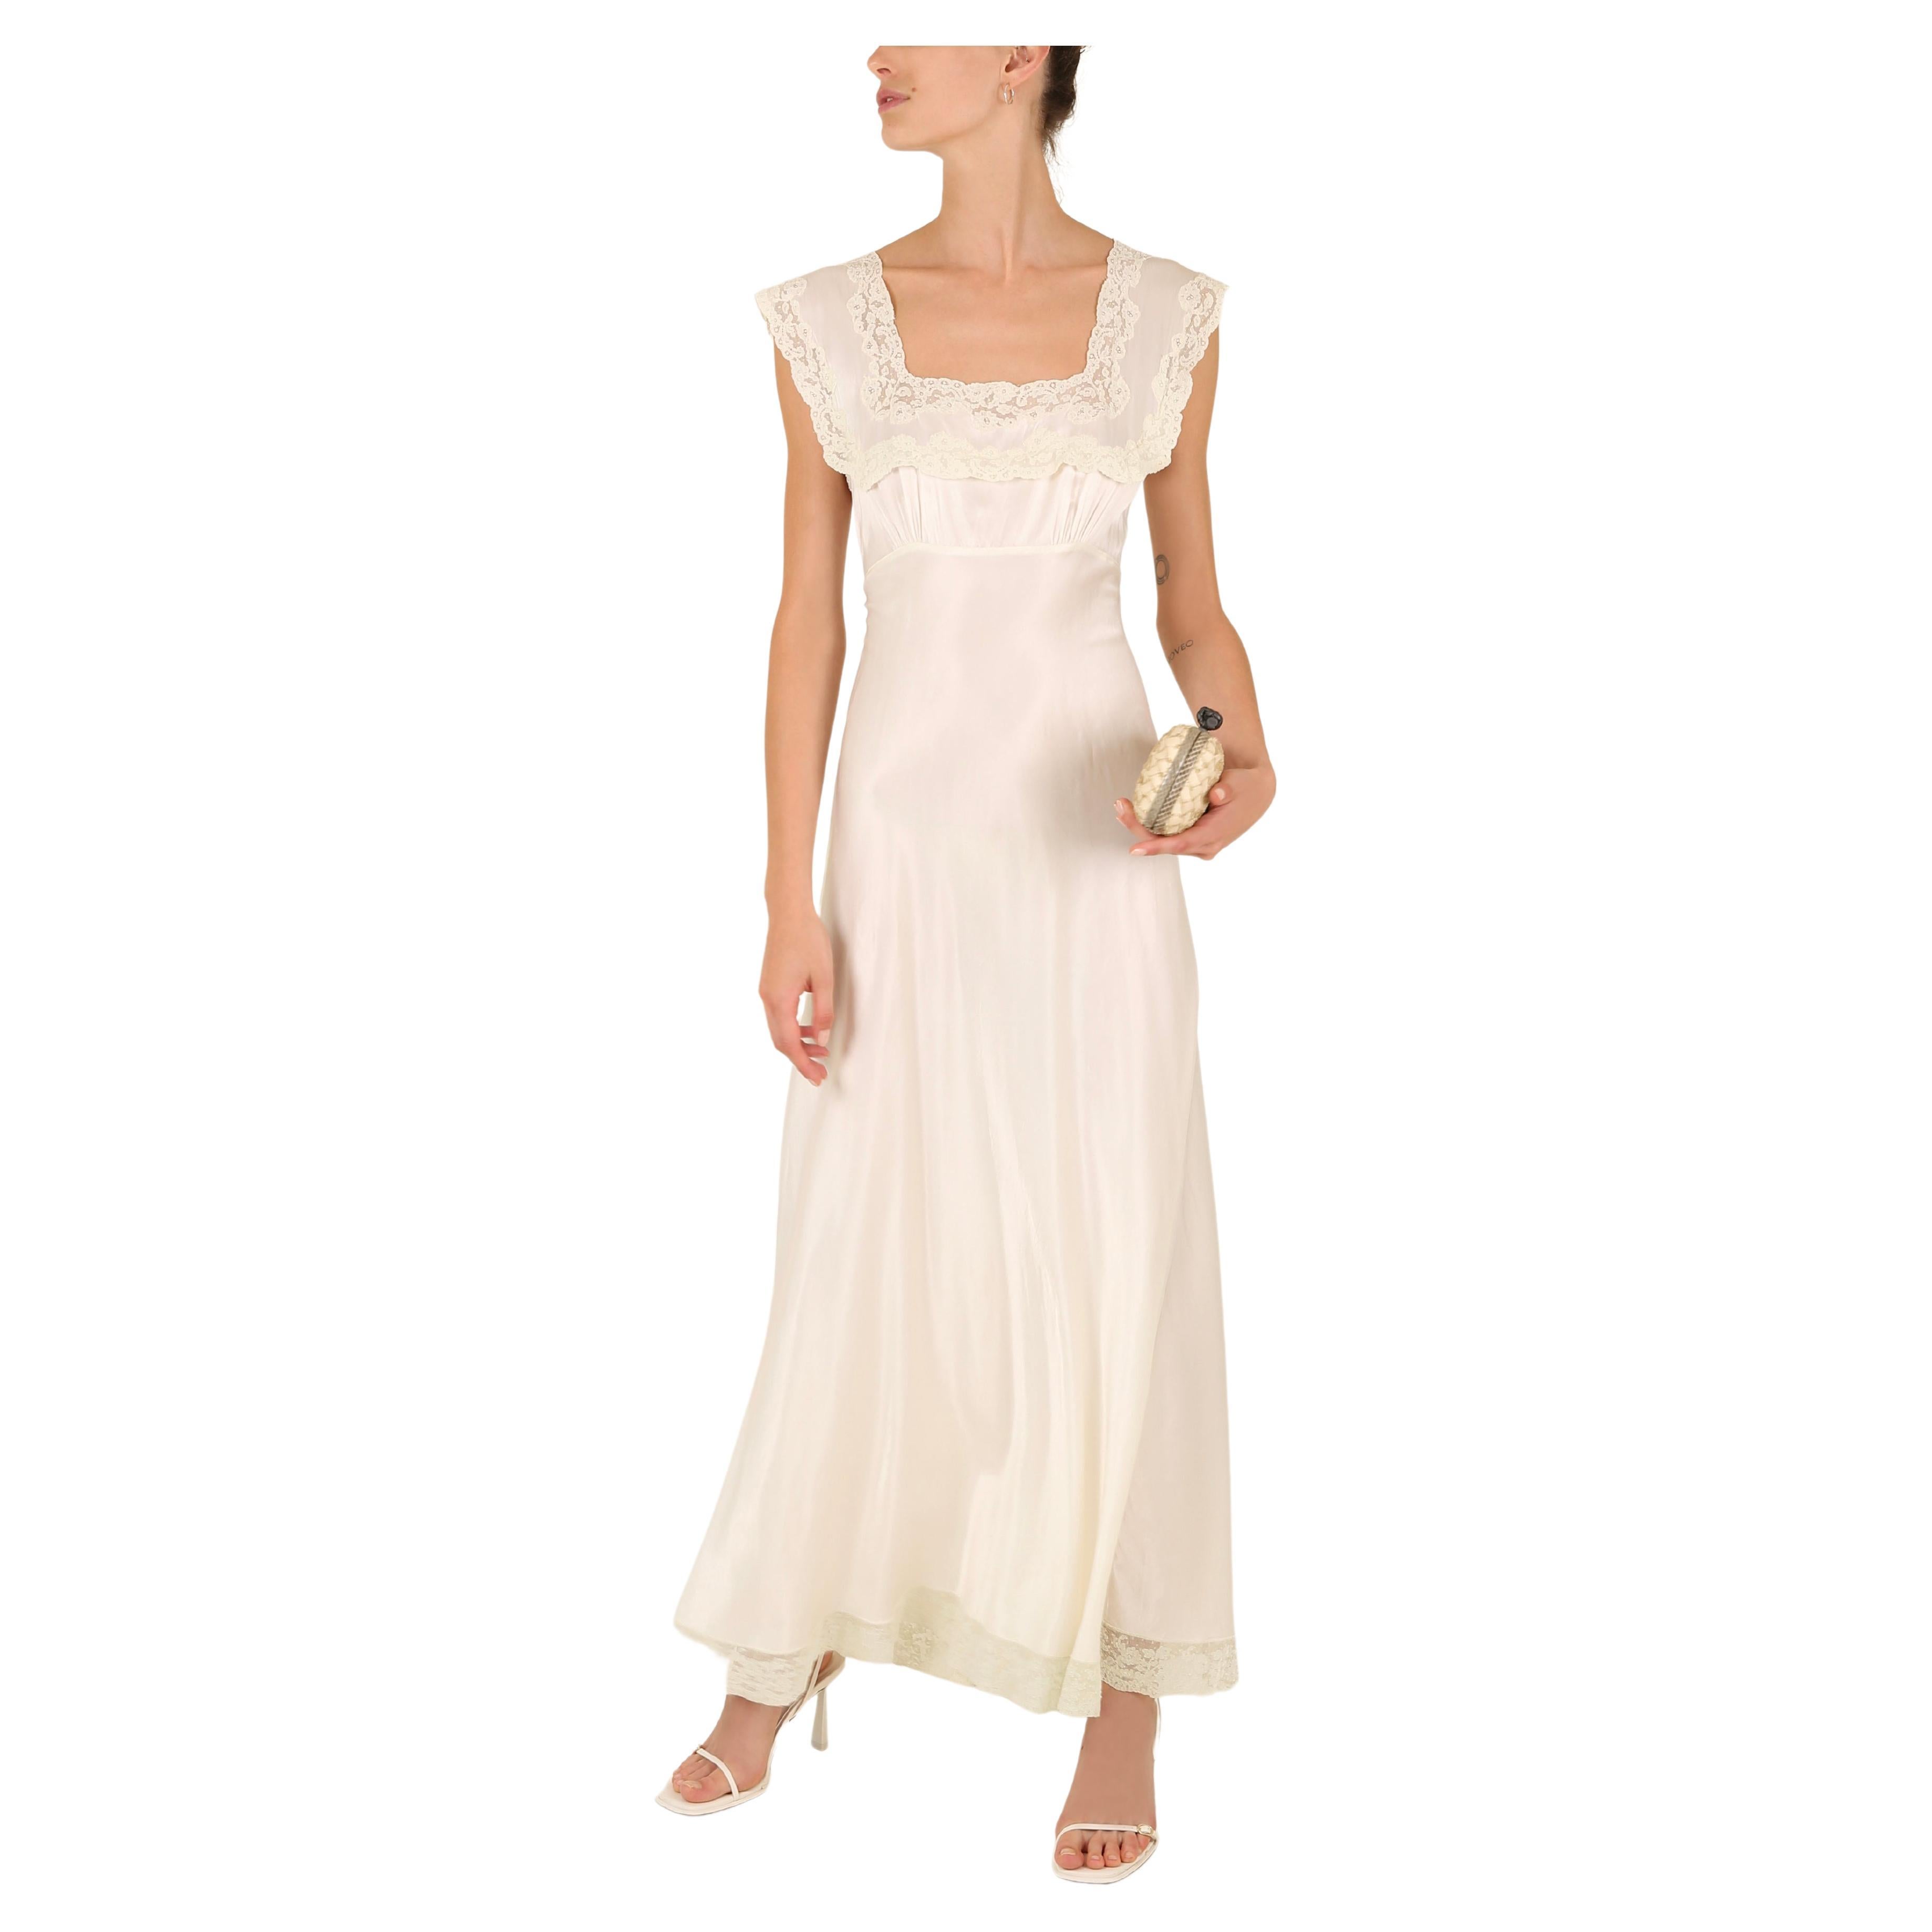 Heavenly Fischer vintage 40s silk white ivory lace wedding night gown slip dress